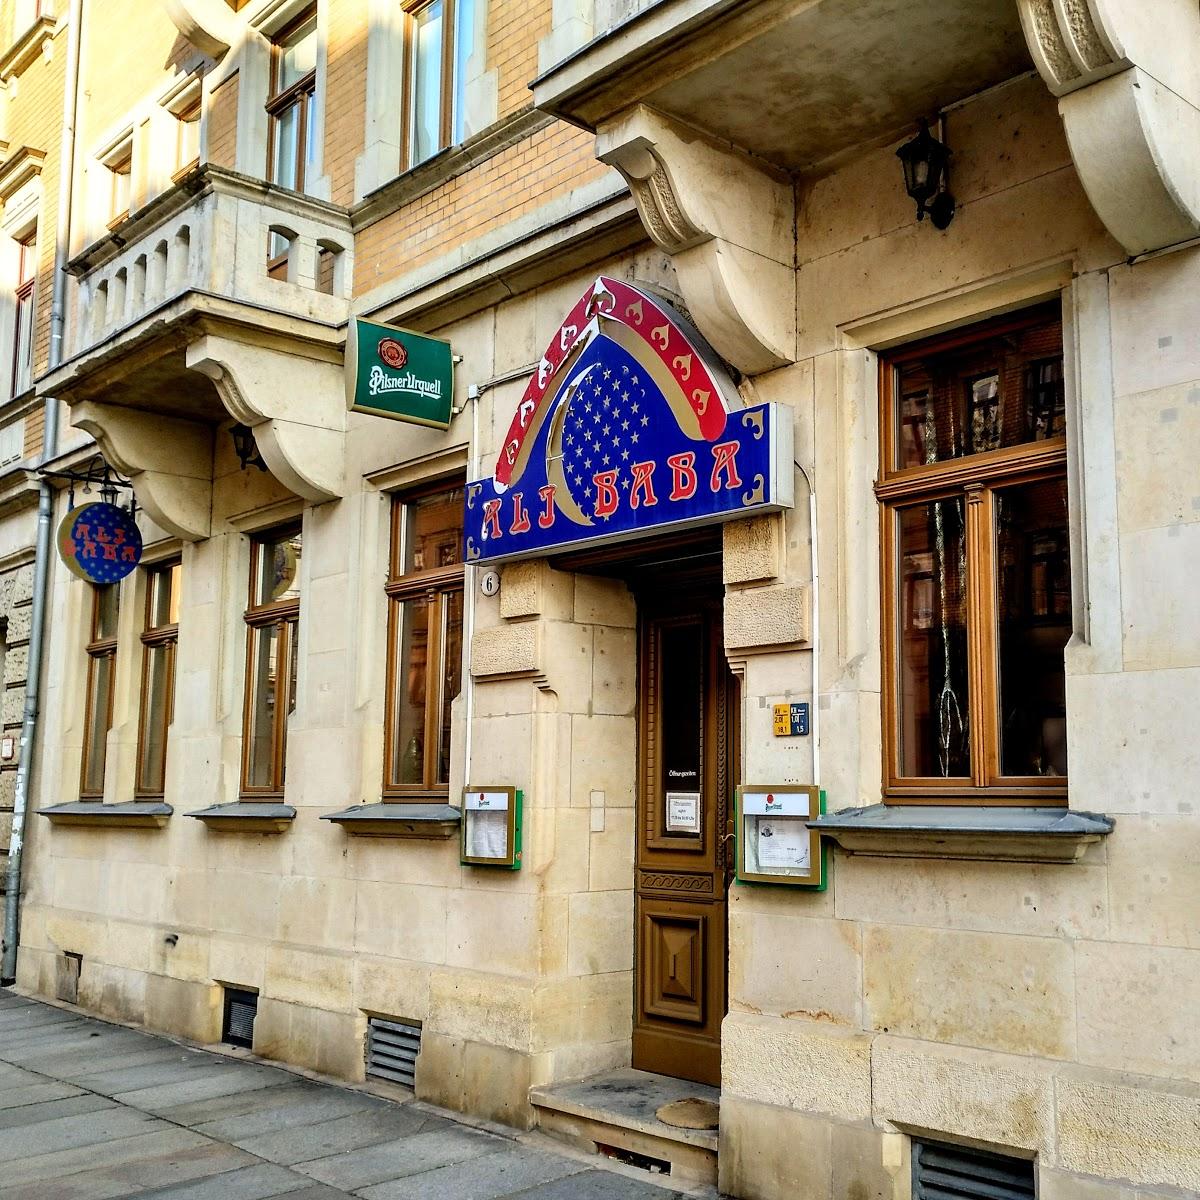 Restaurant "Ali Baba arabische Speisen" in Dresden